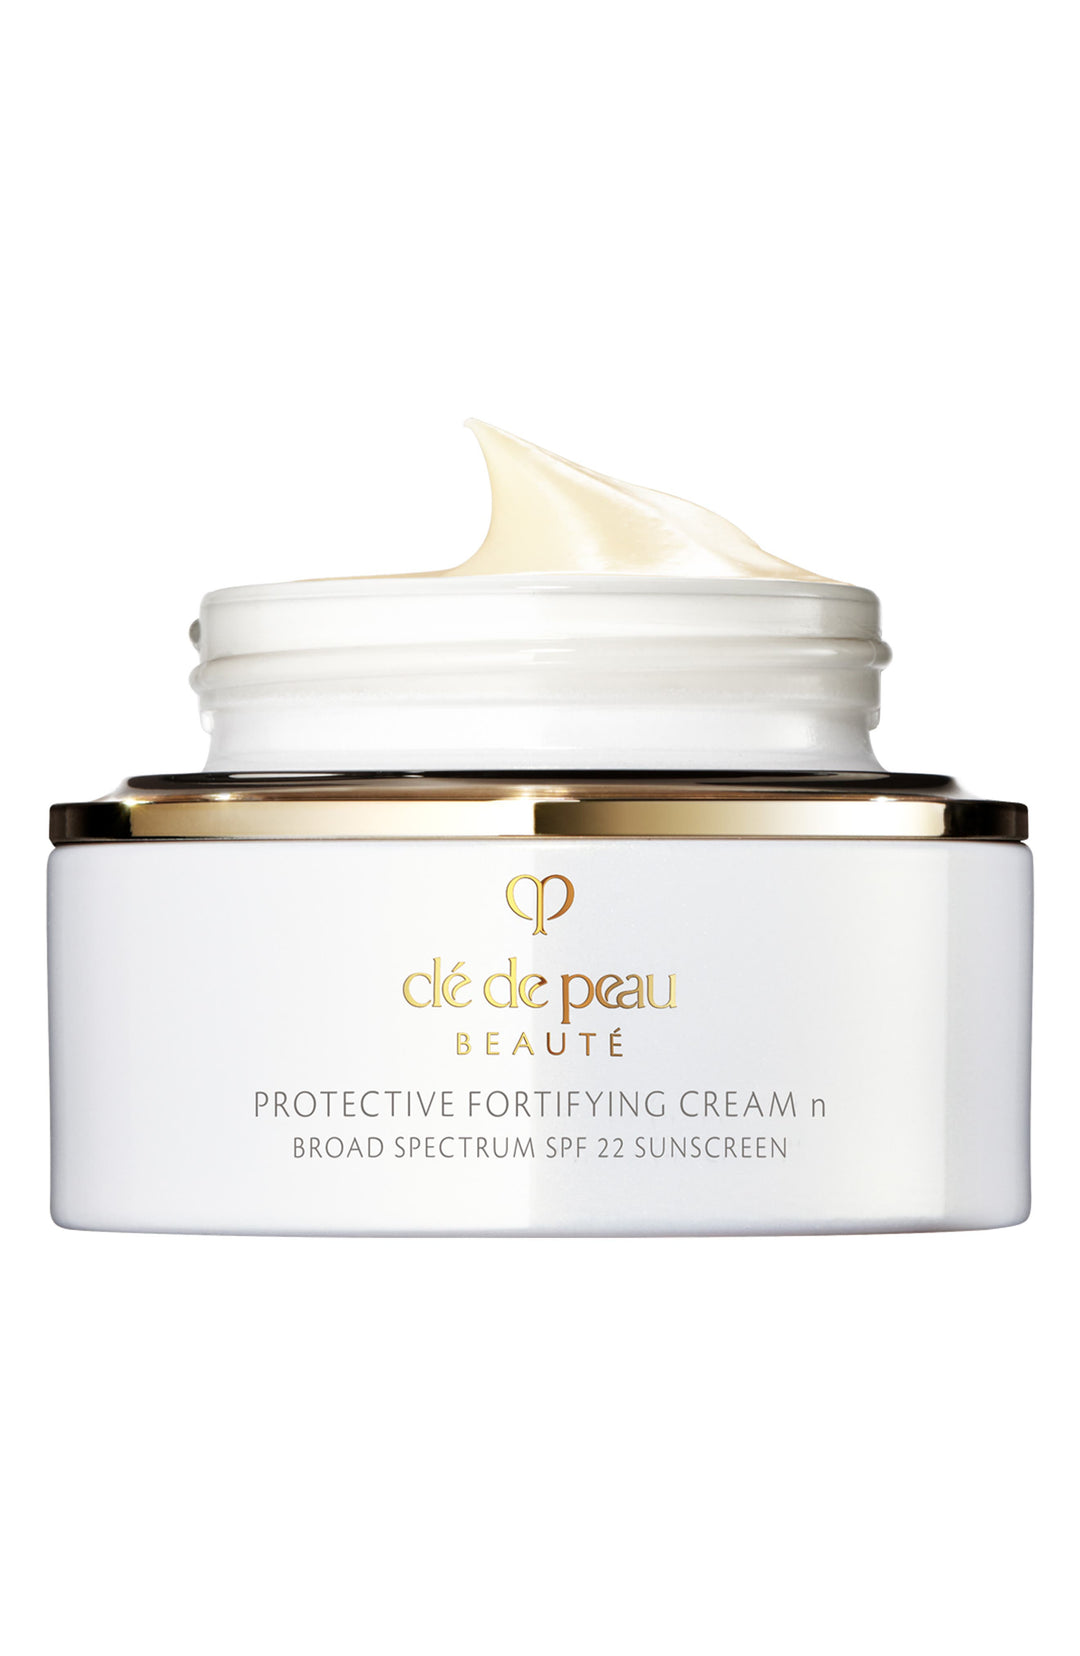 Clé de Peau Beauté Protective Fortifying Cream SPF 22 1.7oz